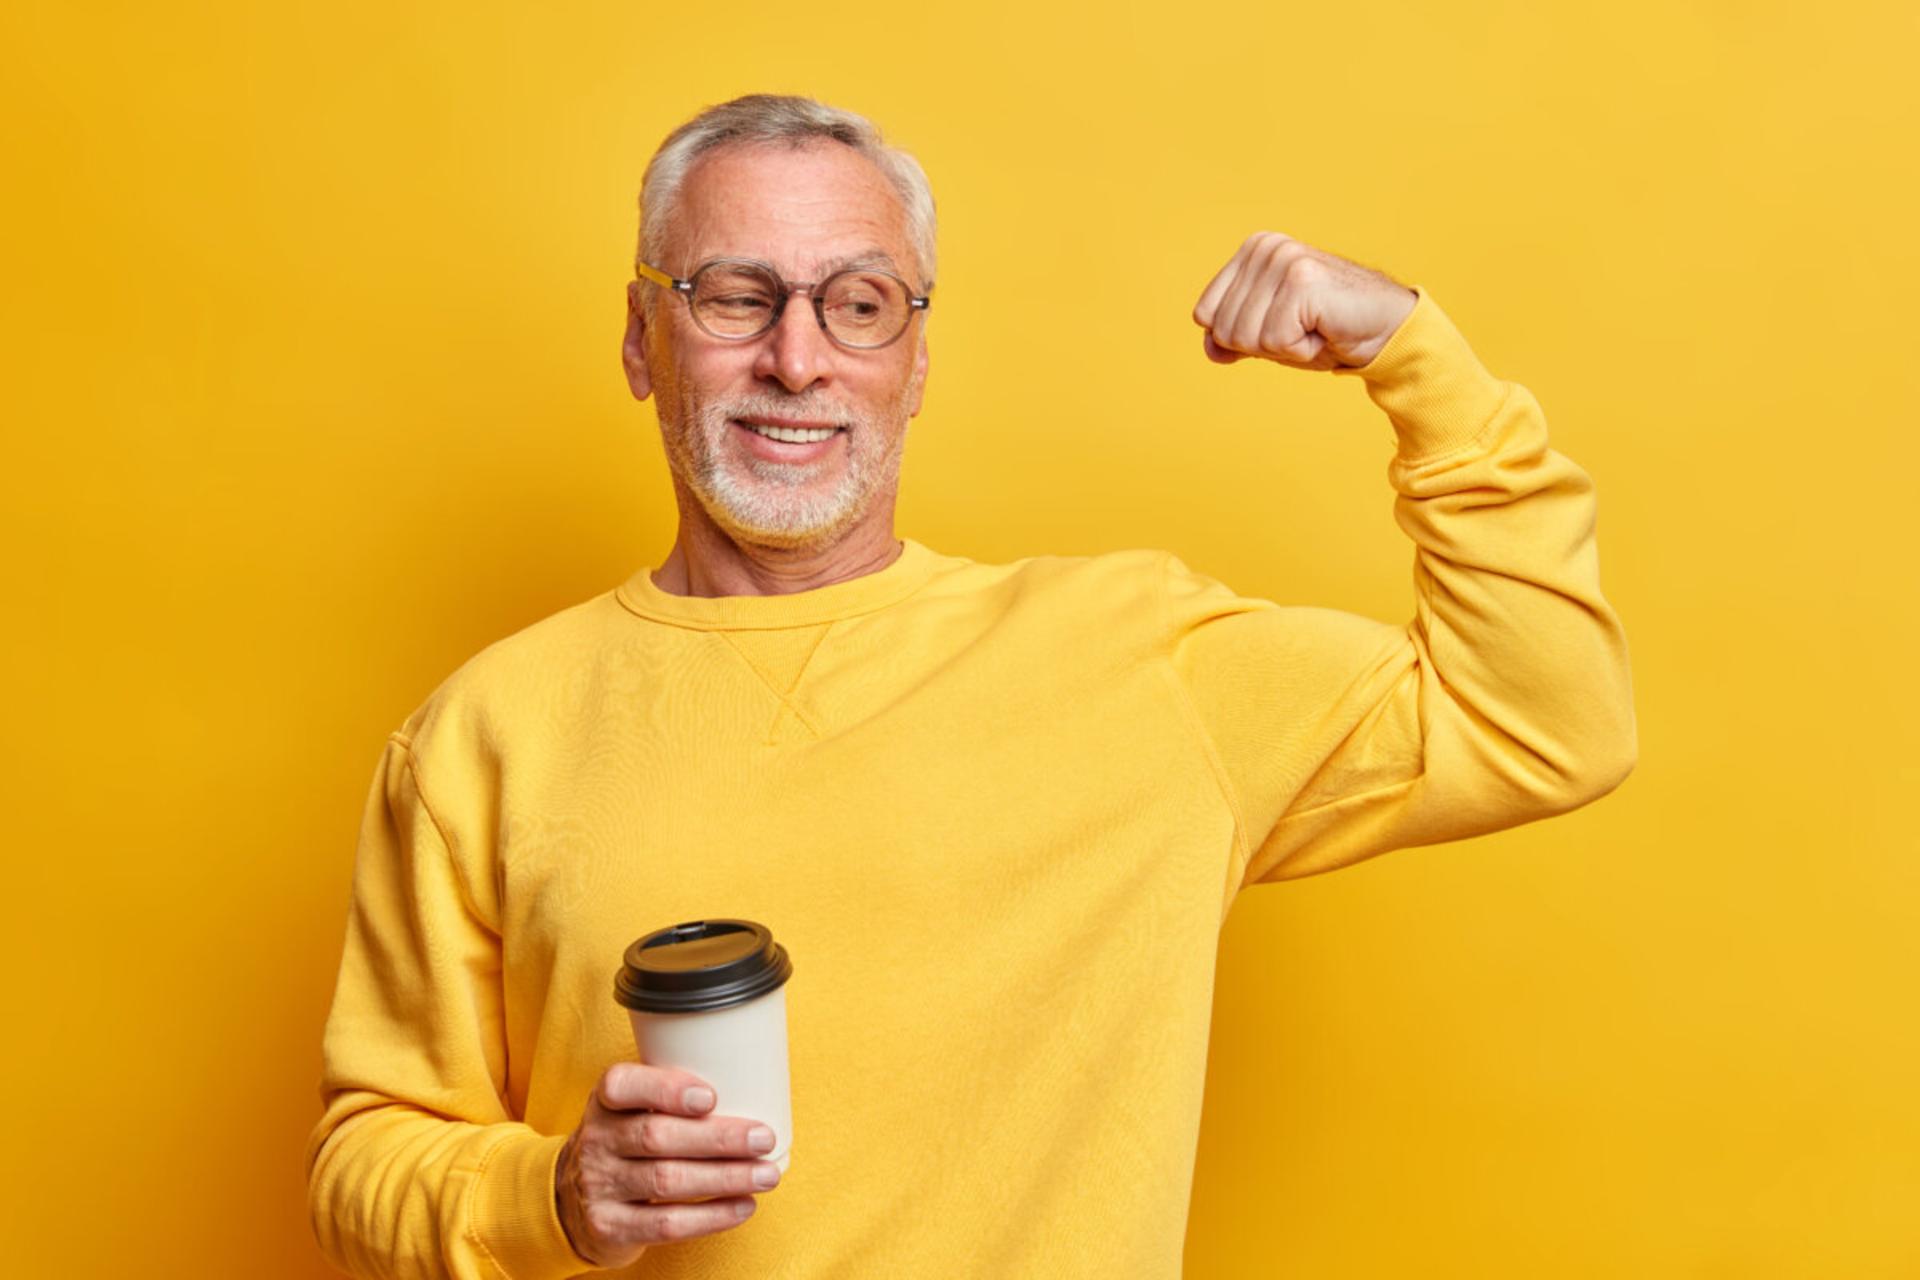 مرجع متخصصين ايران مرد مسن با لباس زرد و قهوه در دست در حال كشيدن عضلات زمينه زرد